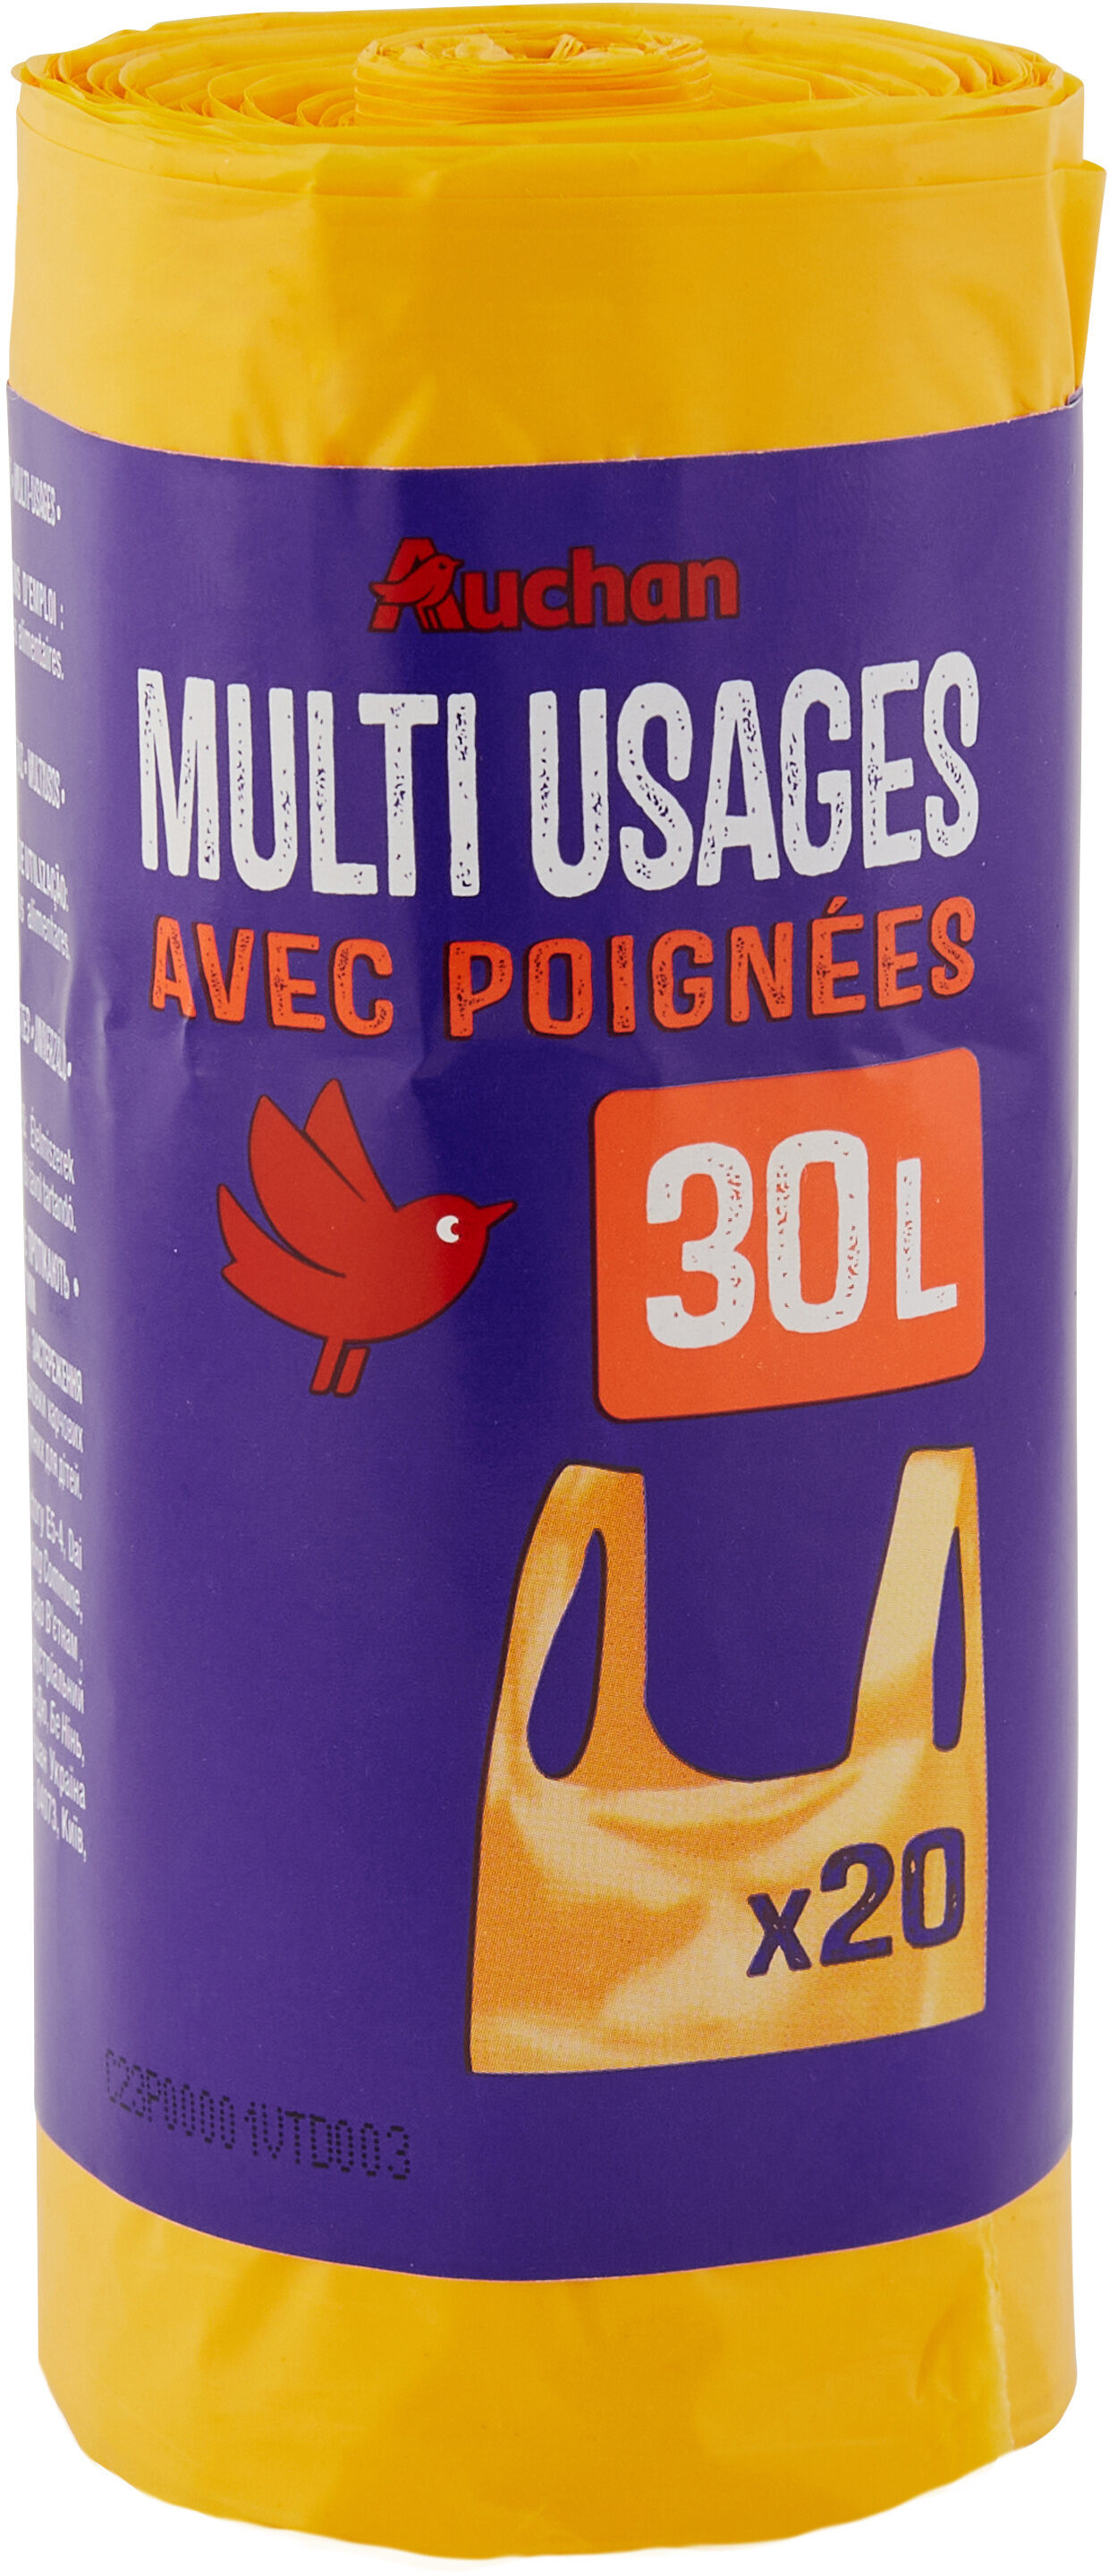 Auchan sacs multifonctions a poignee 30l 20pcs - Produit - fr